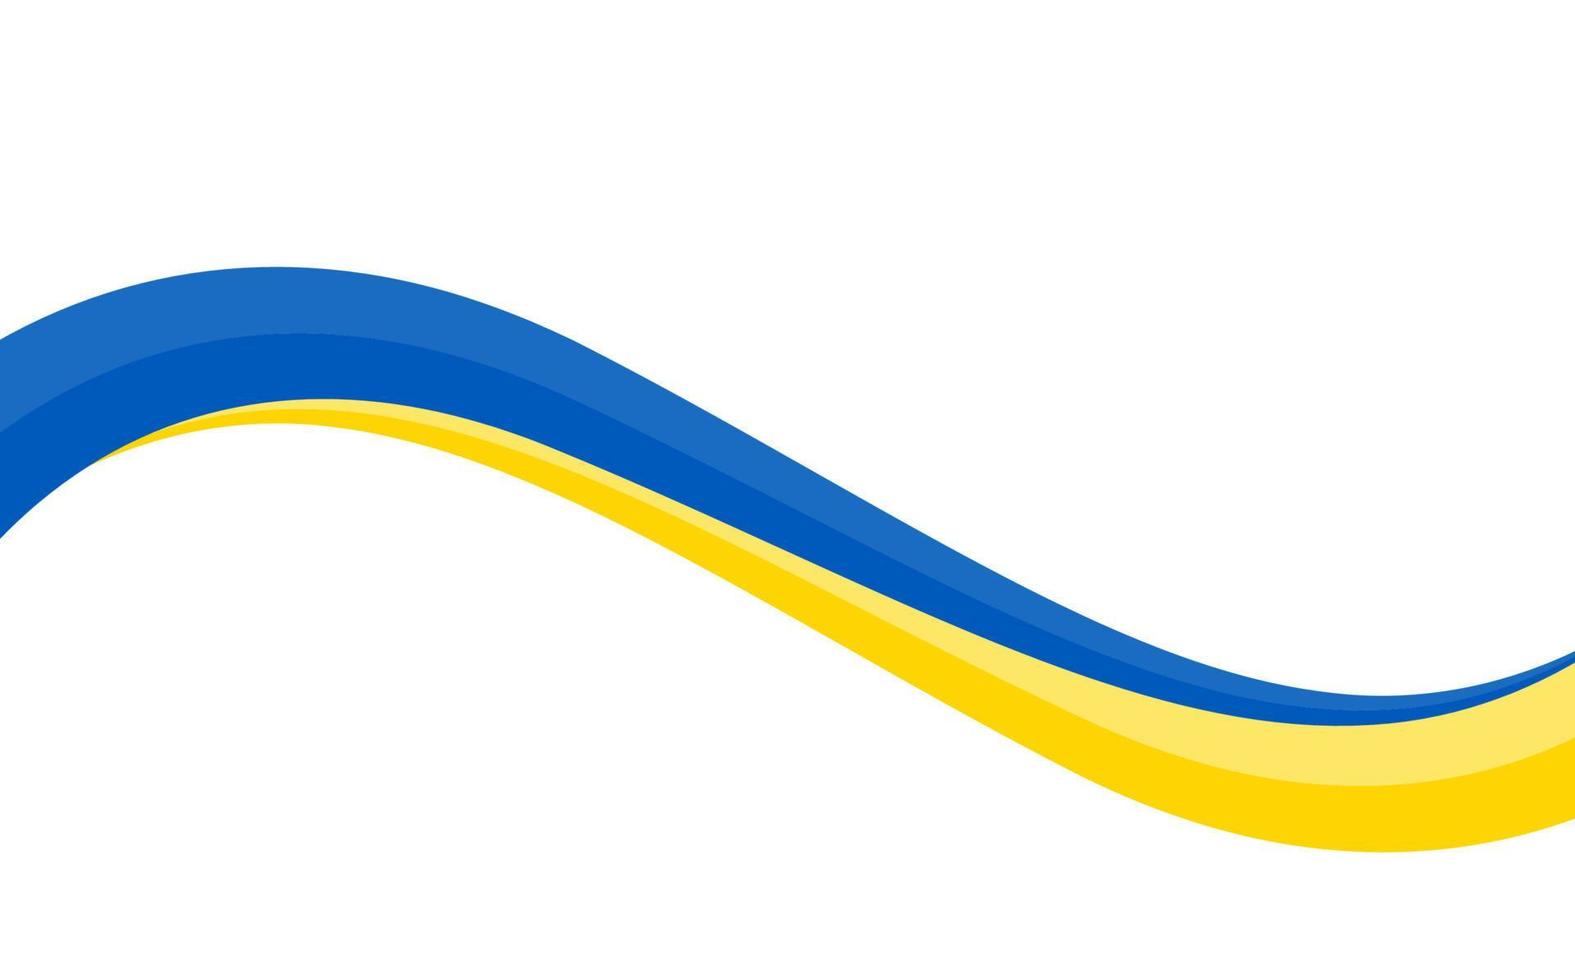 golvend patroon met de nationale vlag van oekraïne, grenskader gestreepte vlag van oekraïne. symbool, posterbanner van de Oekraïense vlag. lint zwaaien in blauwe en gele stijl, vector geïsoleerd op een witte achtergrond